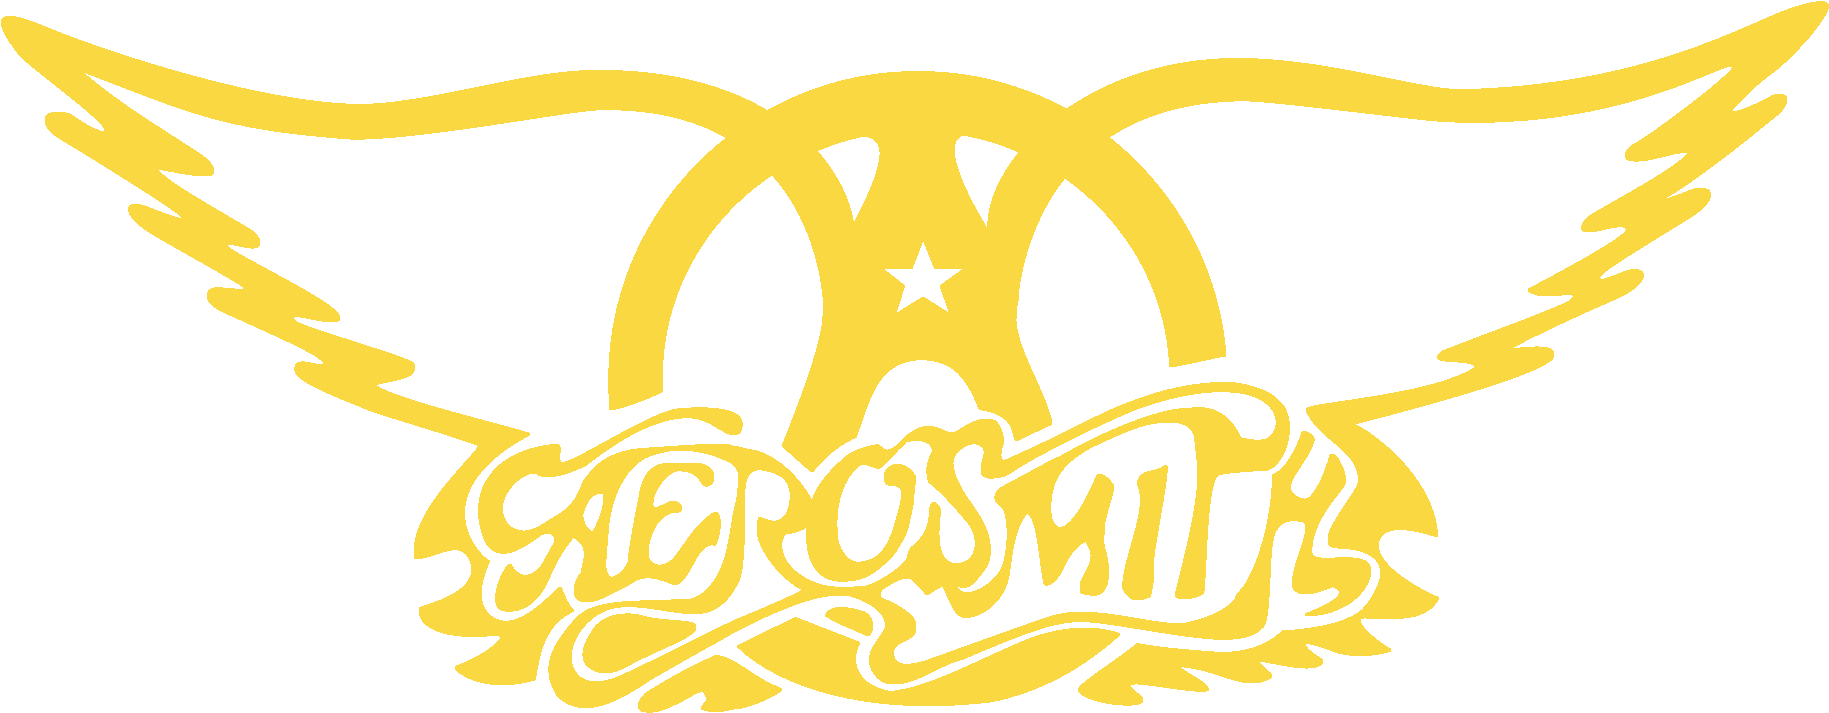 Logo Aerosmith Band HQ Image Free PNG Image